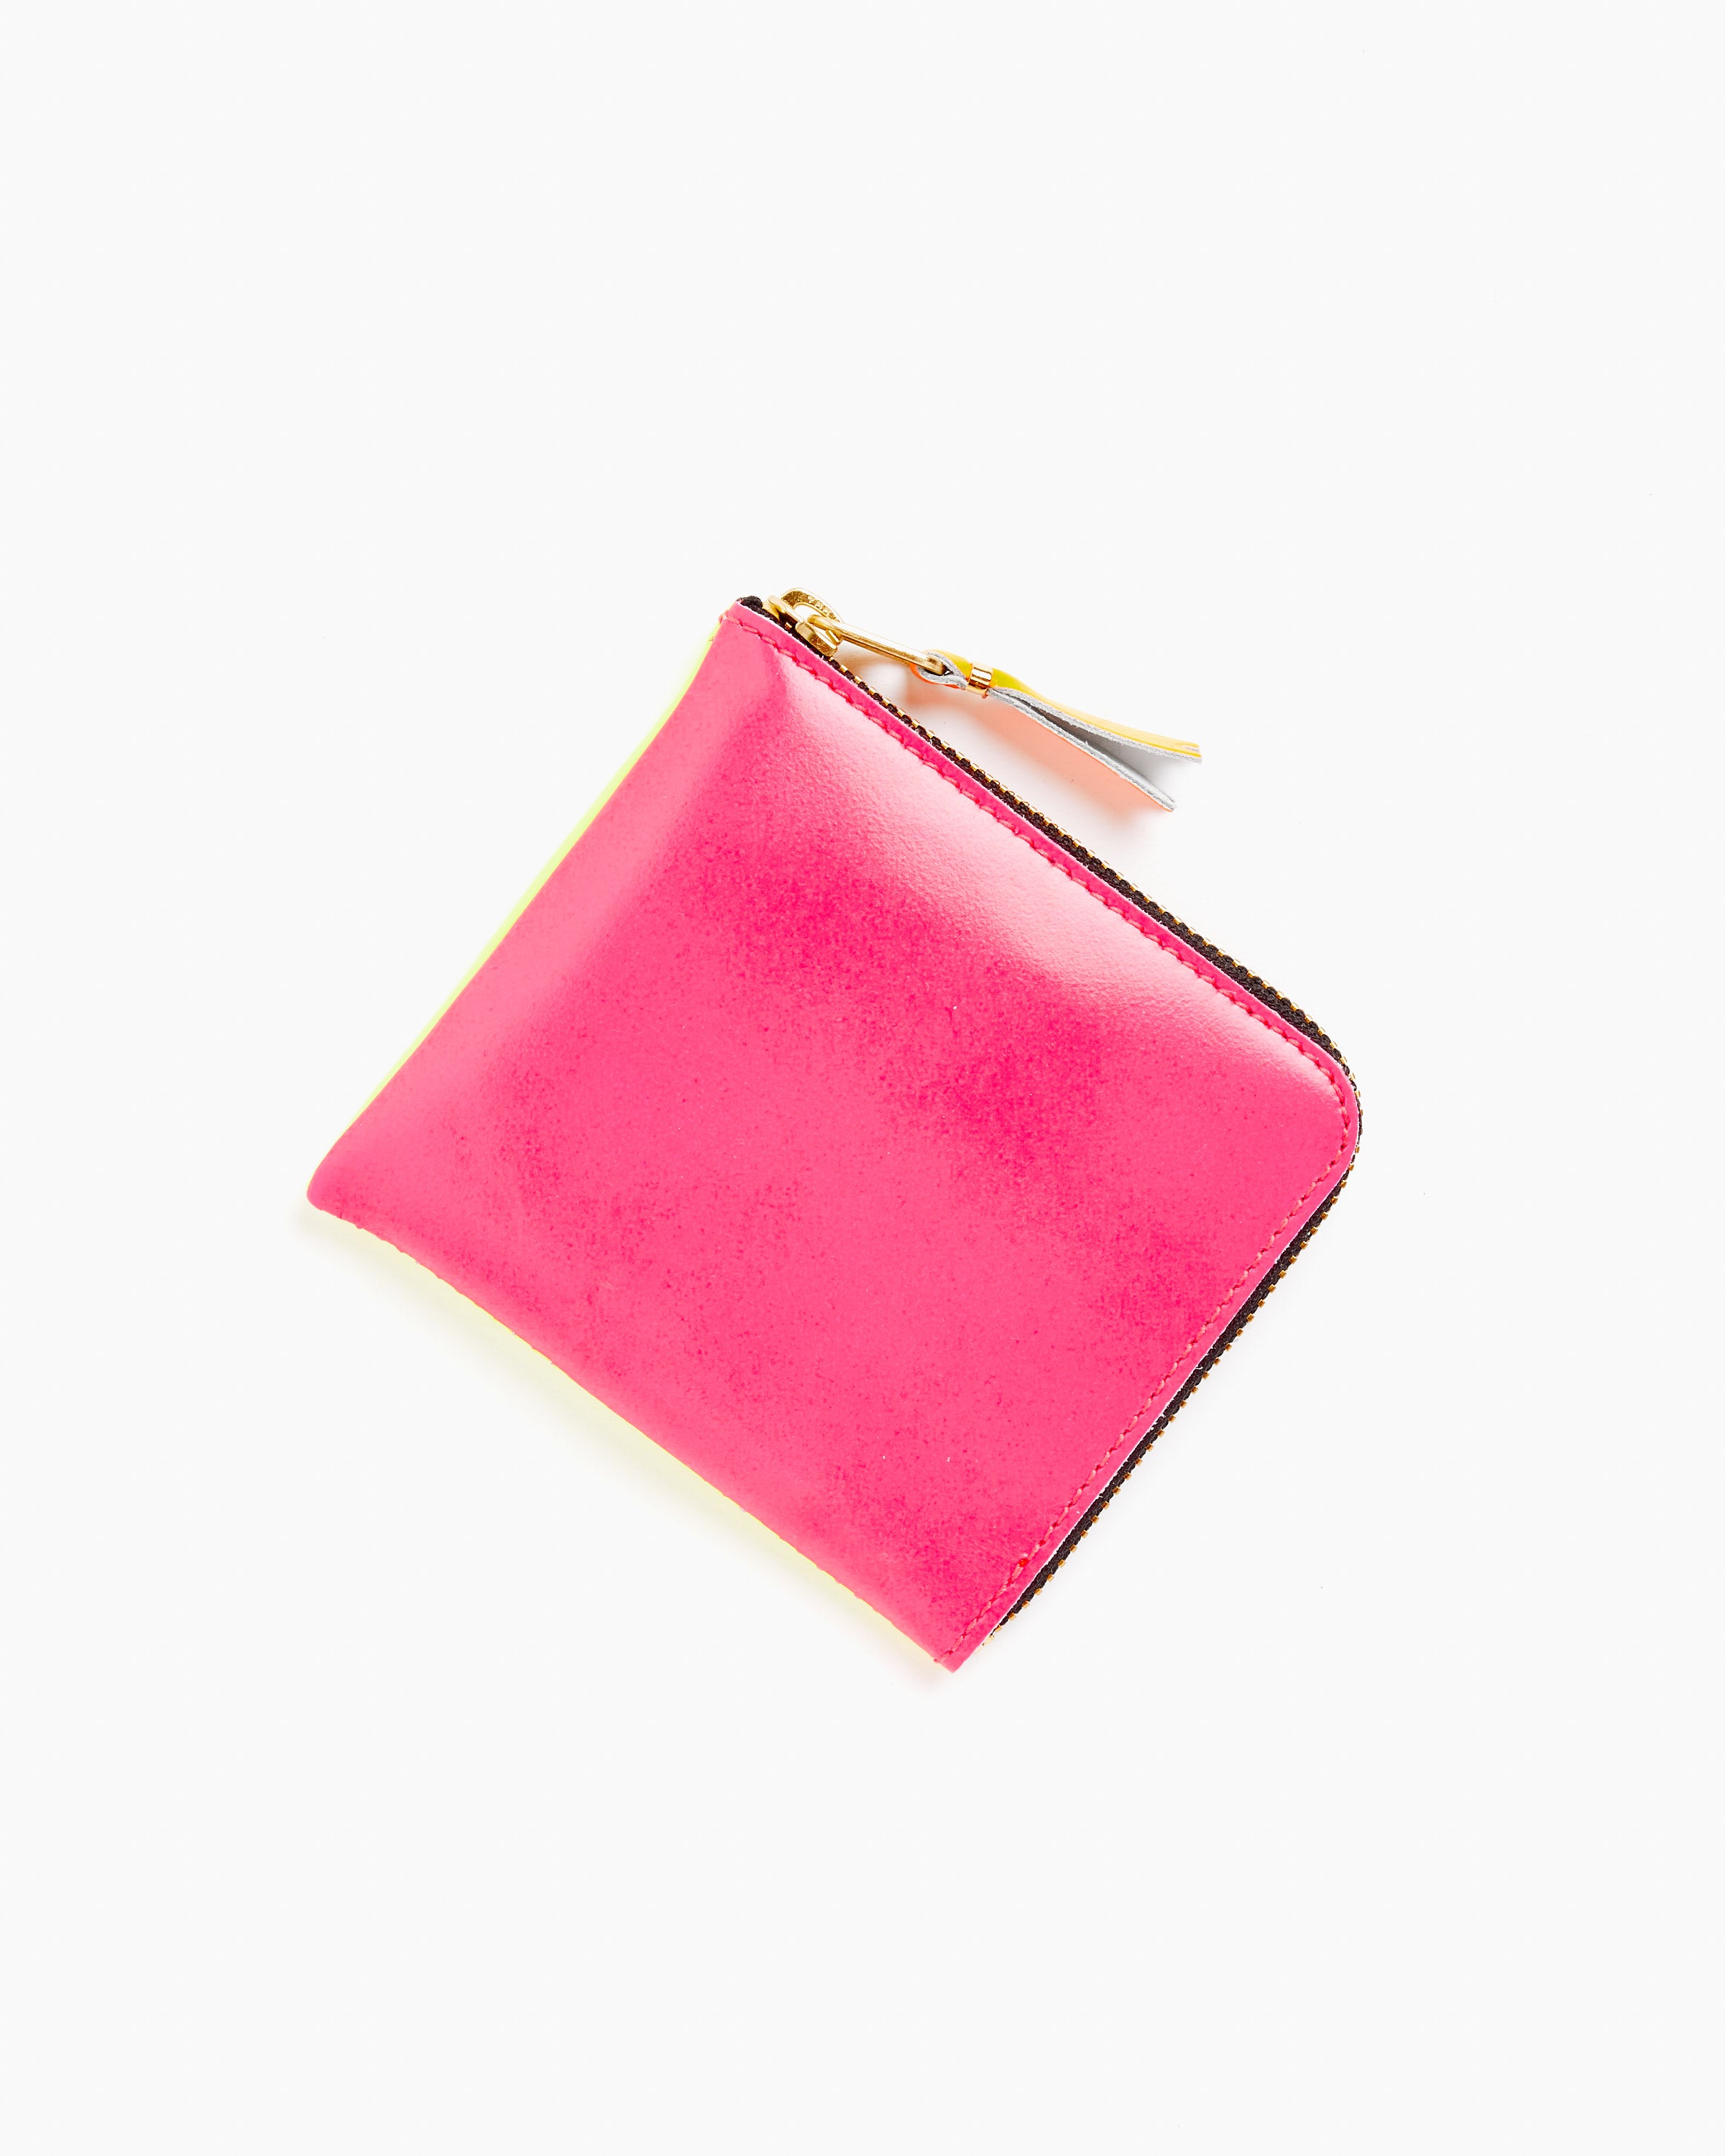 Super Fluo Half Zip Wallet in Pink/Yellow